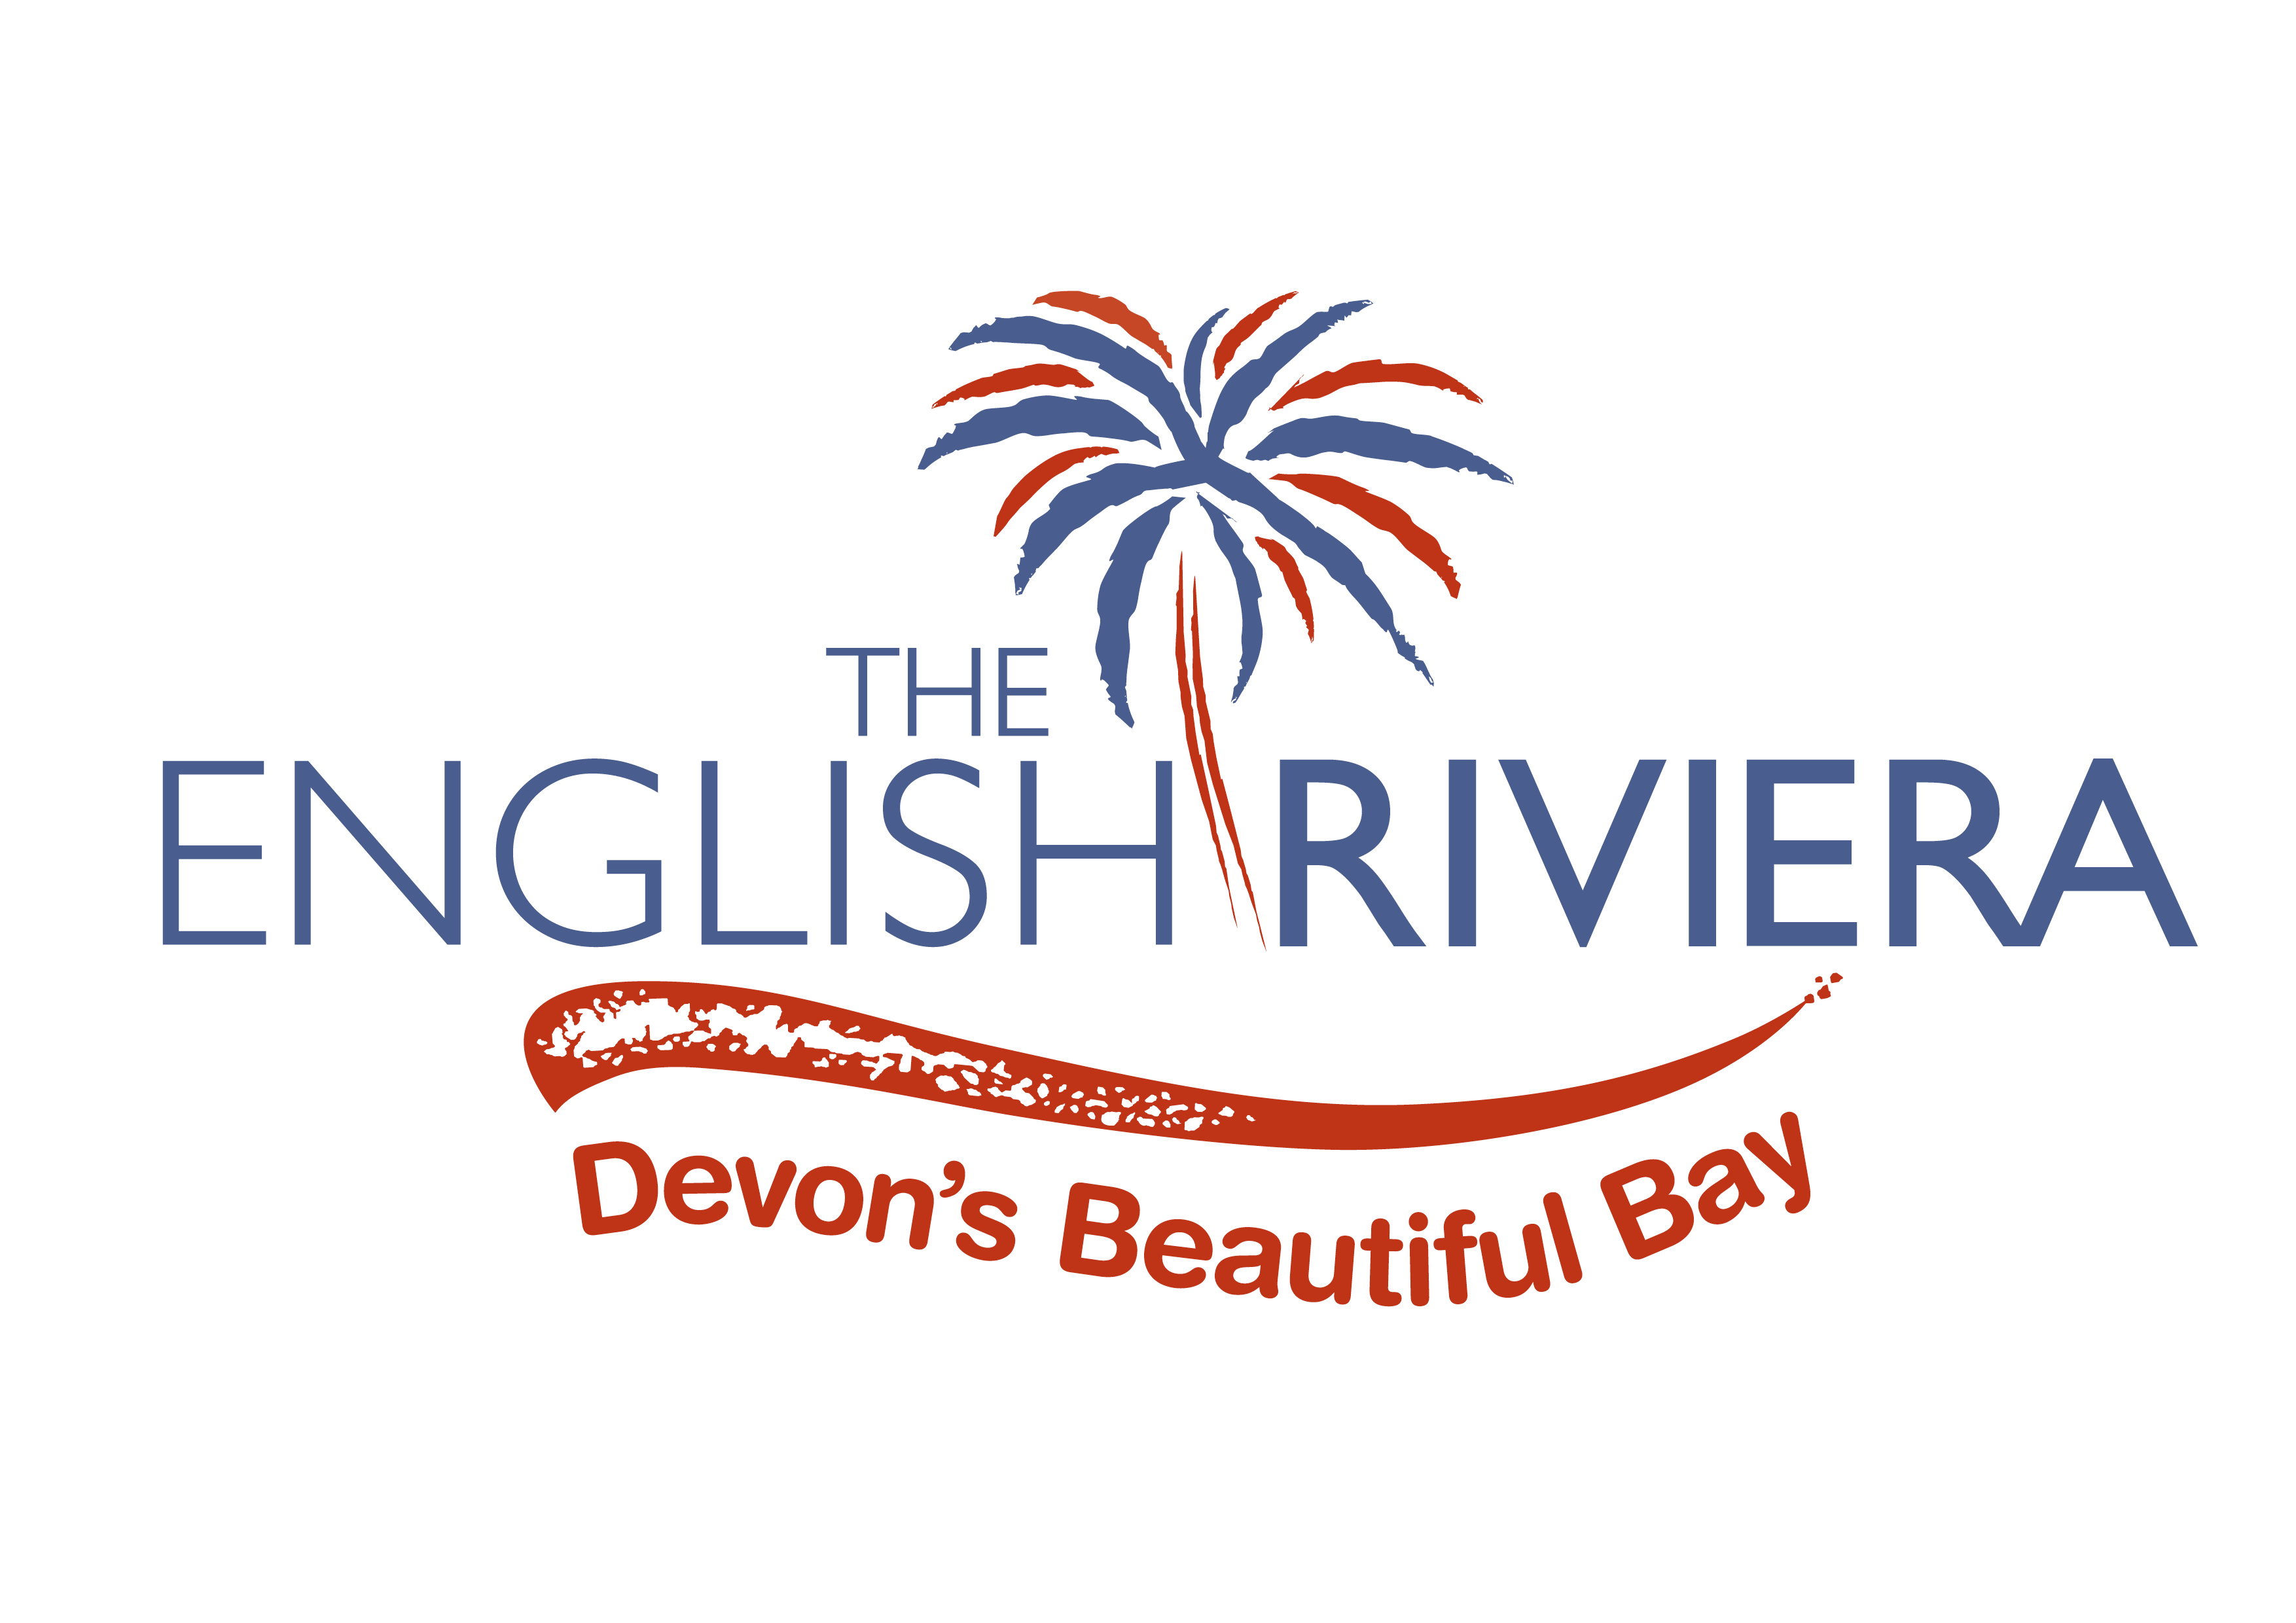 english riviera tourism company